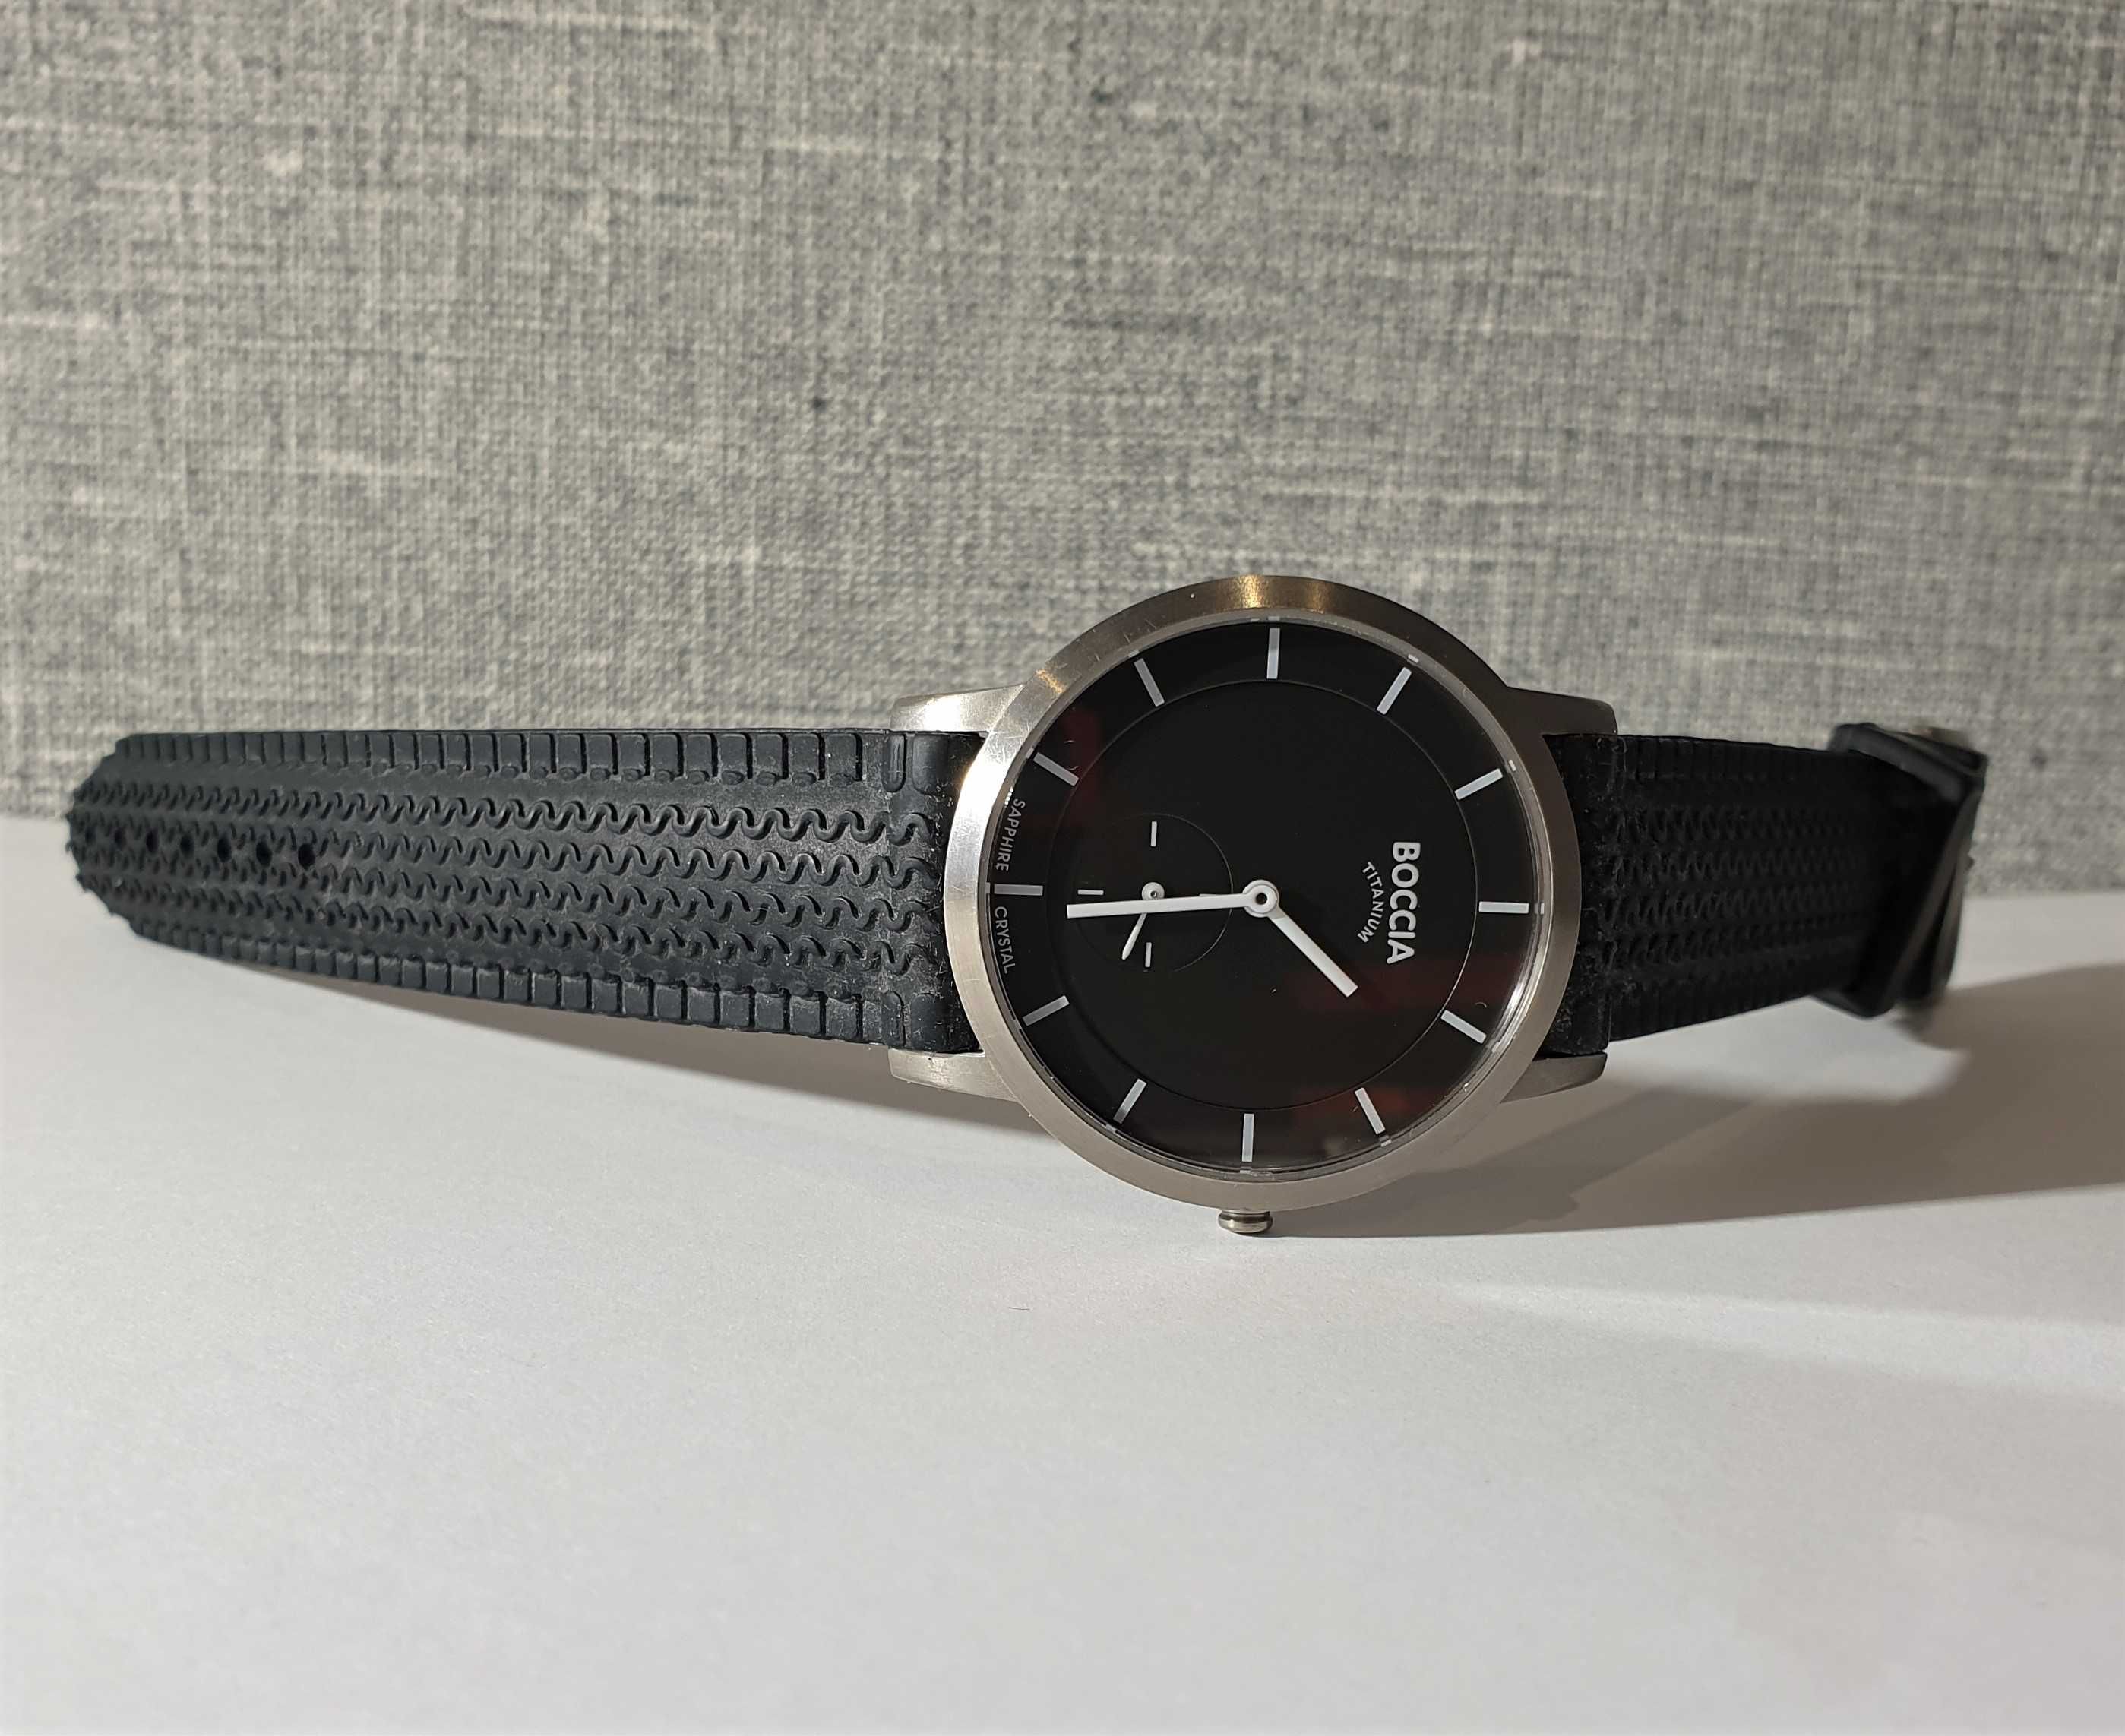 Чоловічий годинник Boccia 3540-02 Sapphire Titanium 39mm